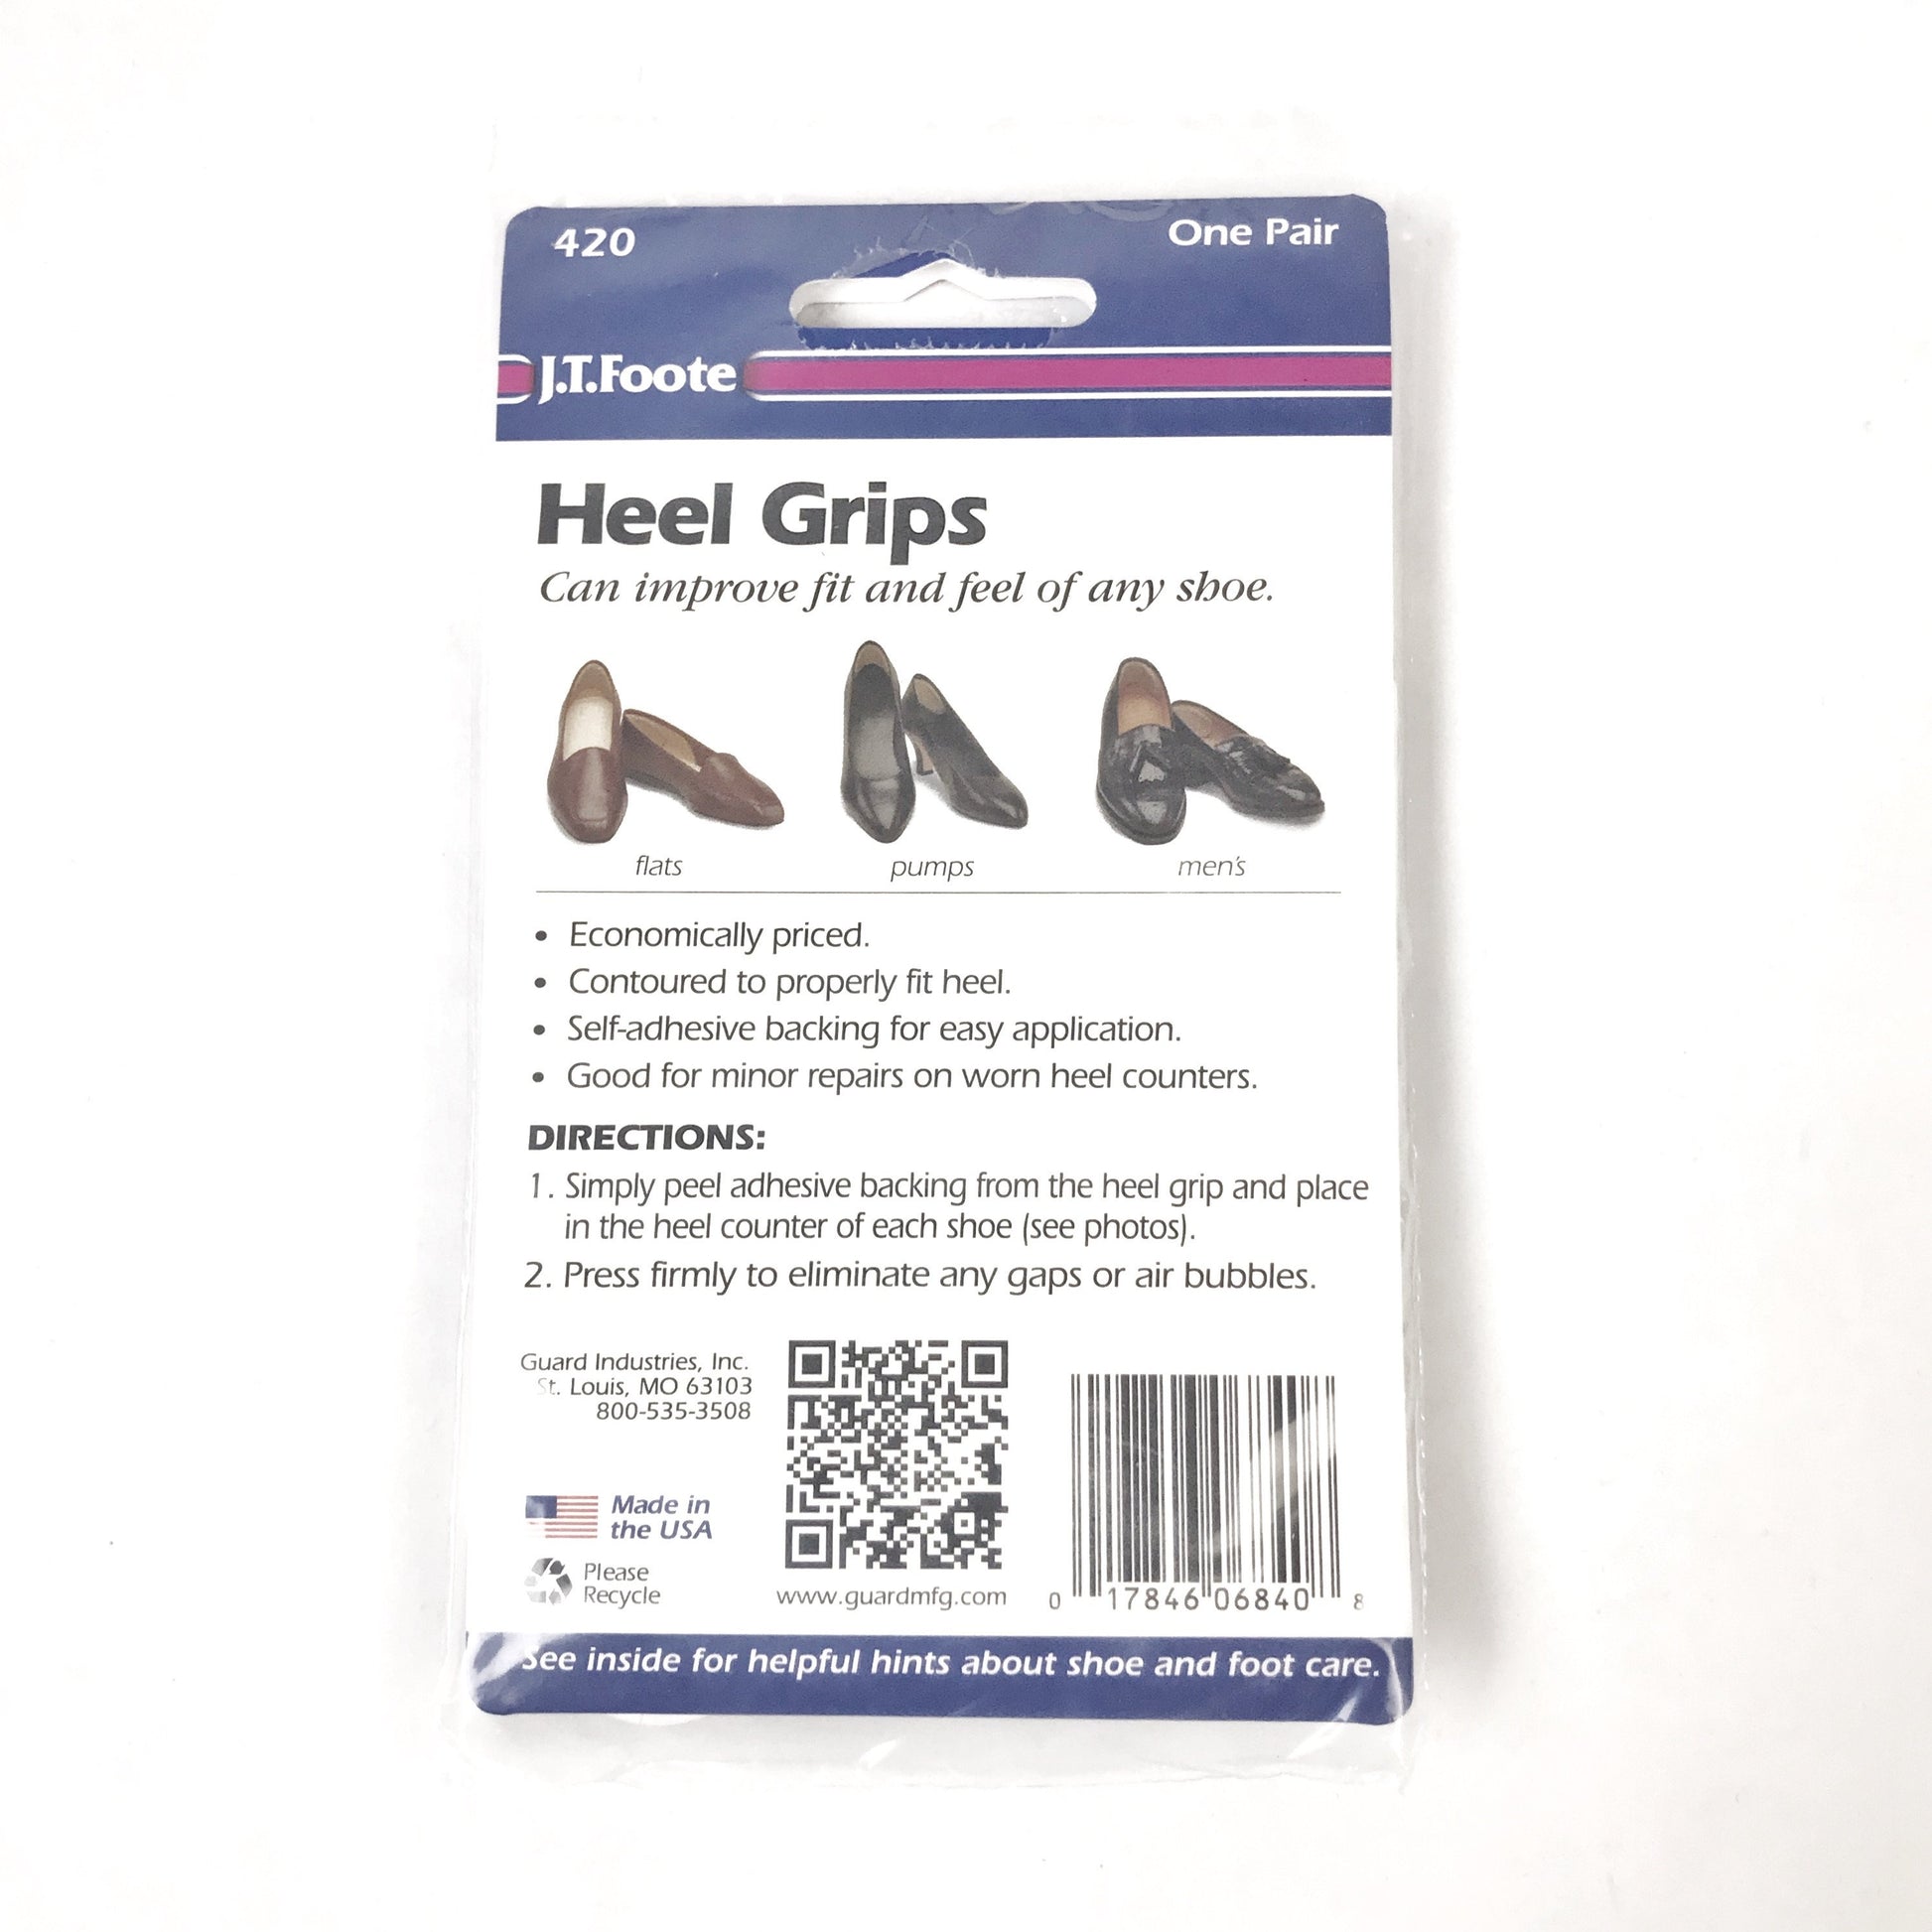 J.T. Foote Heel Grips - Kicks For Gents - Heel Grip - Heel Grip, Shoe Accessories